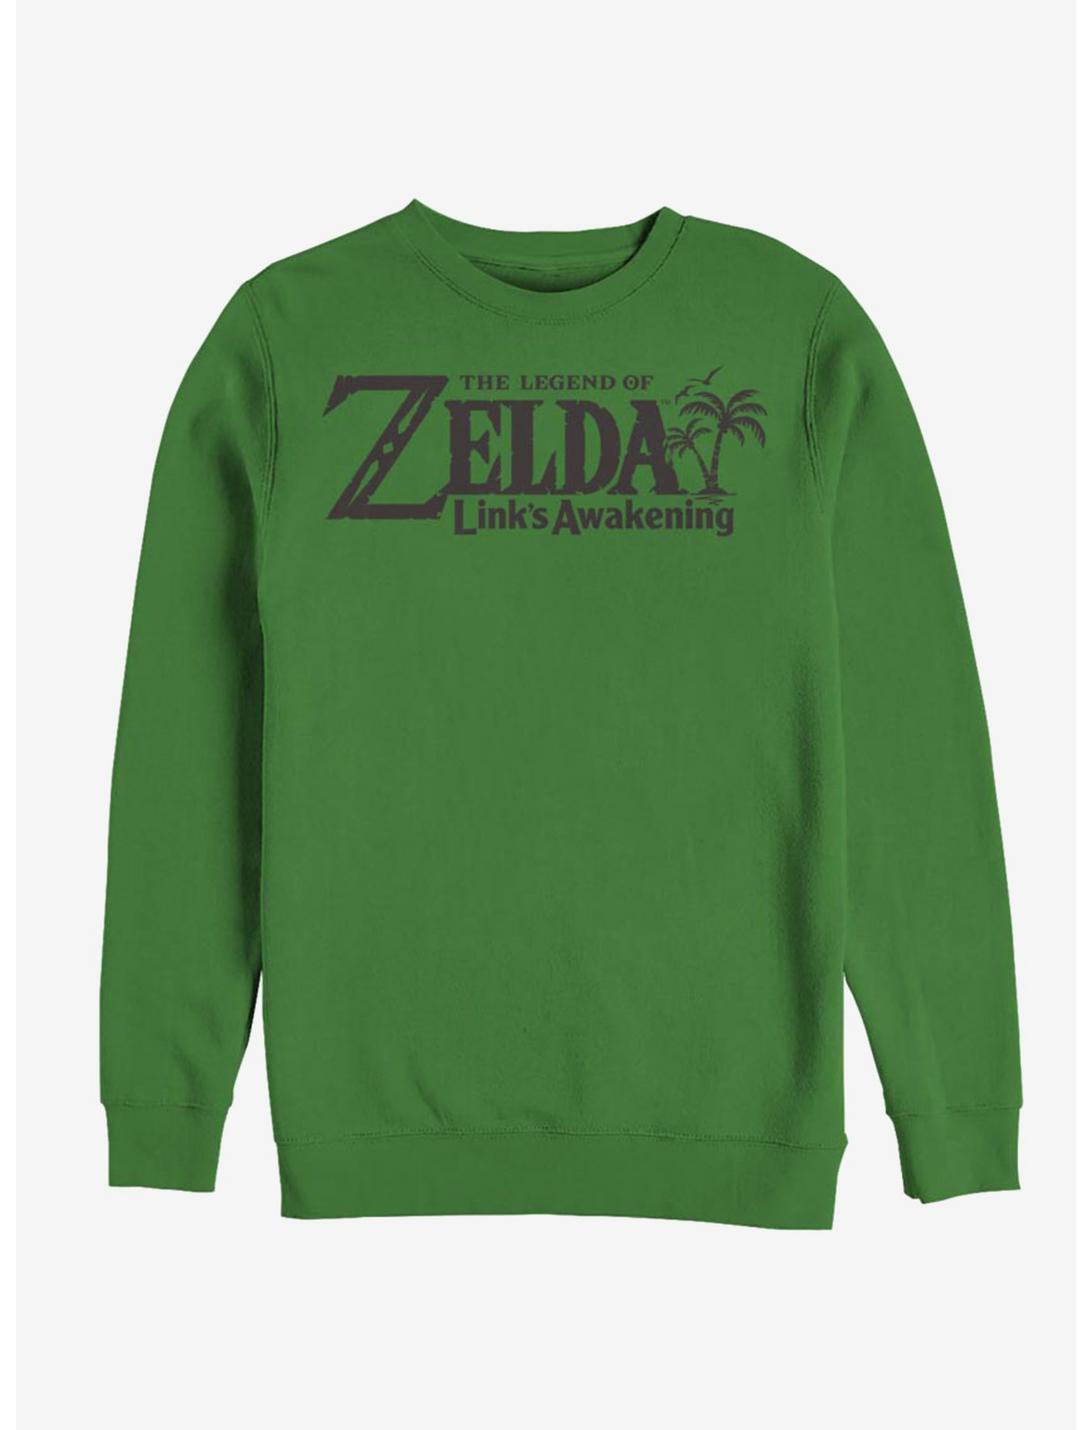 Nintendo The Legend of Zelda Link's Awakening Sweatshirt, KELLY, hi-res